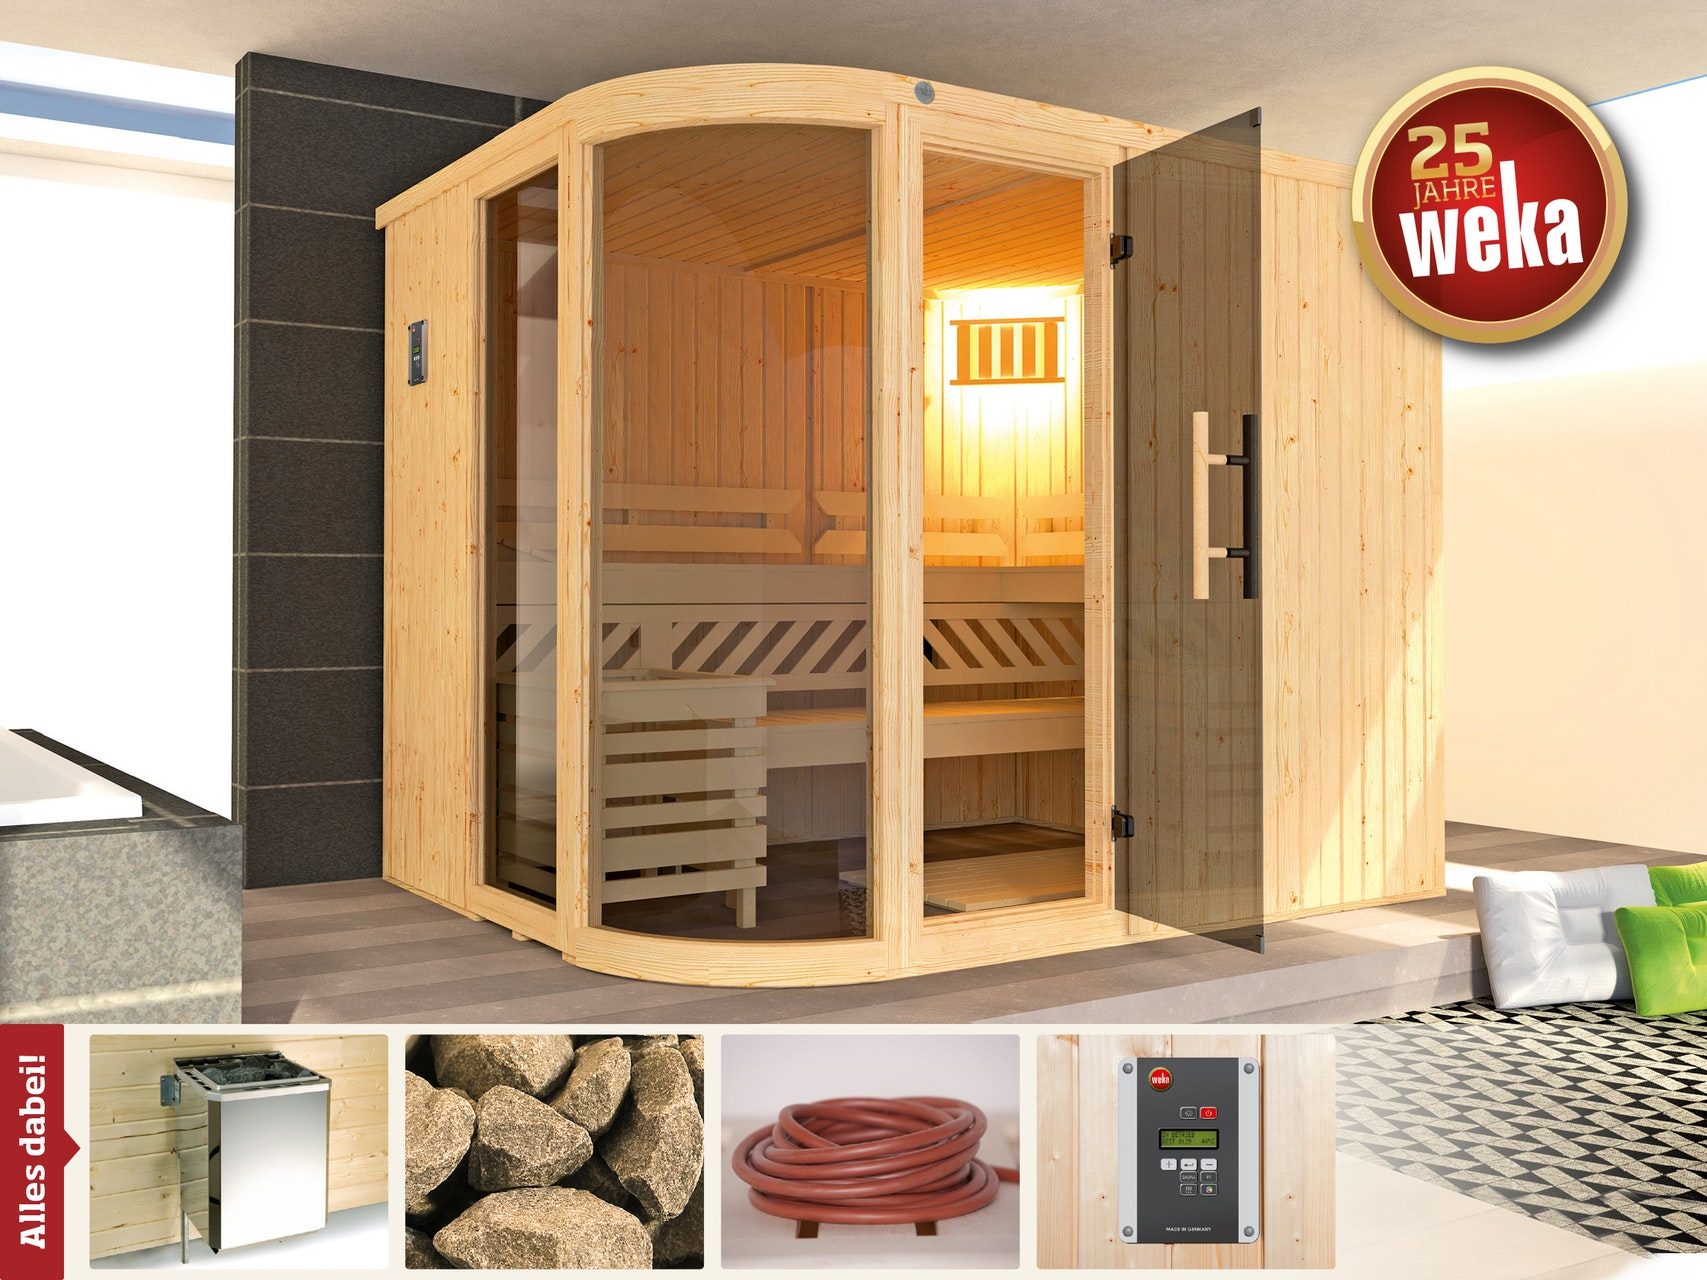 68 Sara Weka mm heater includes saving - - Sauna set Design